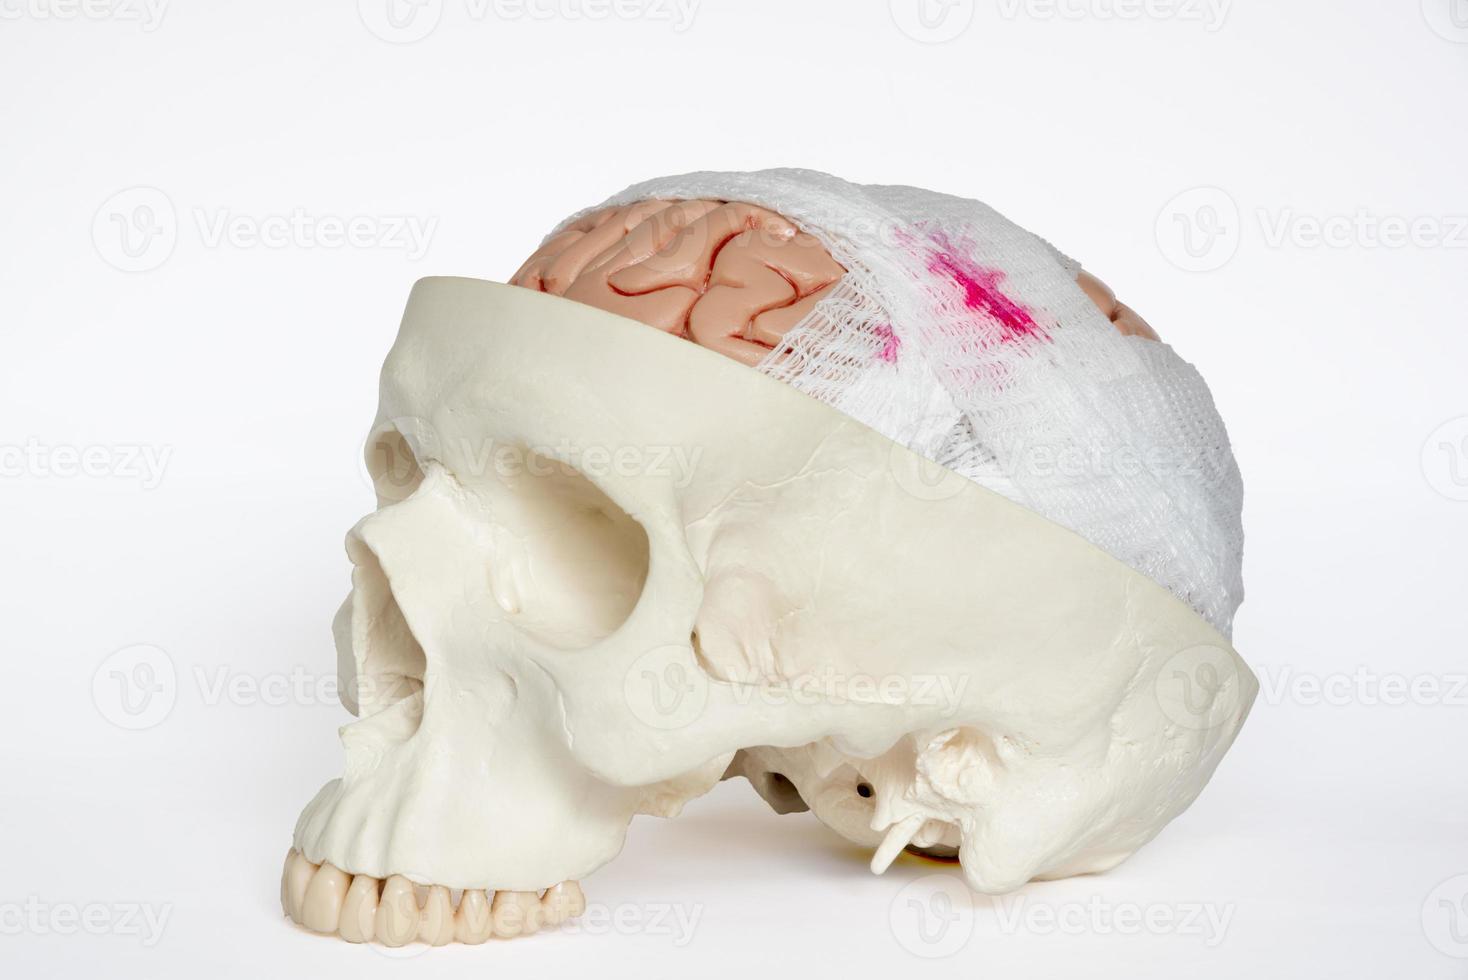 modello di lesione cerebrale vista obliqua su sfondo bianco foto